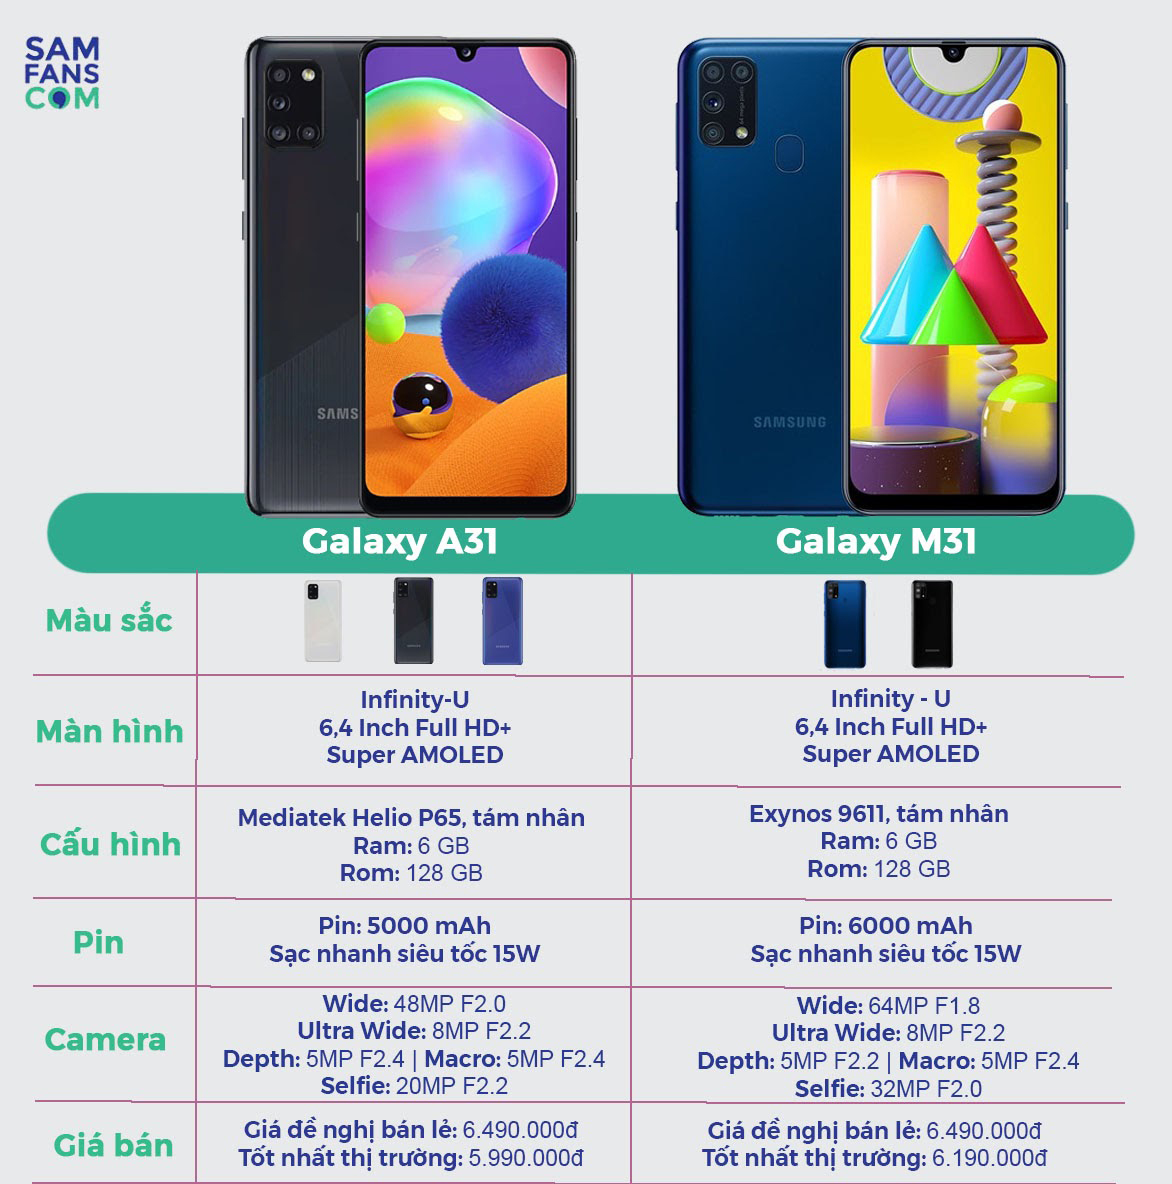 Tổng kết so sánh Galaxy M31 và Galaxy A31 - Samfans 